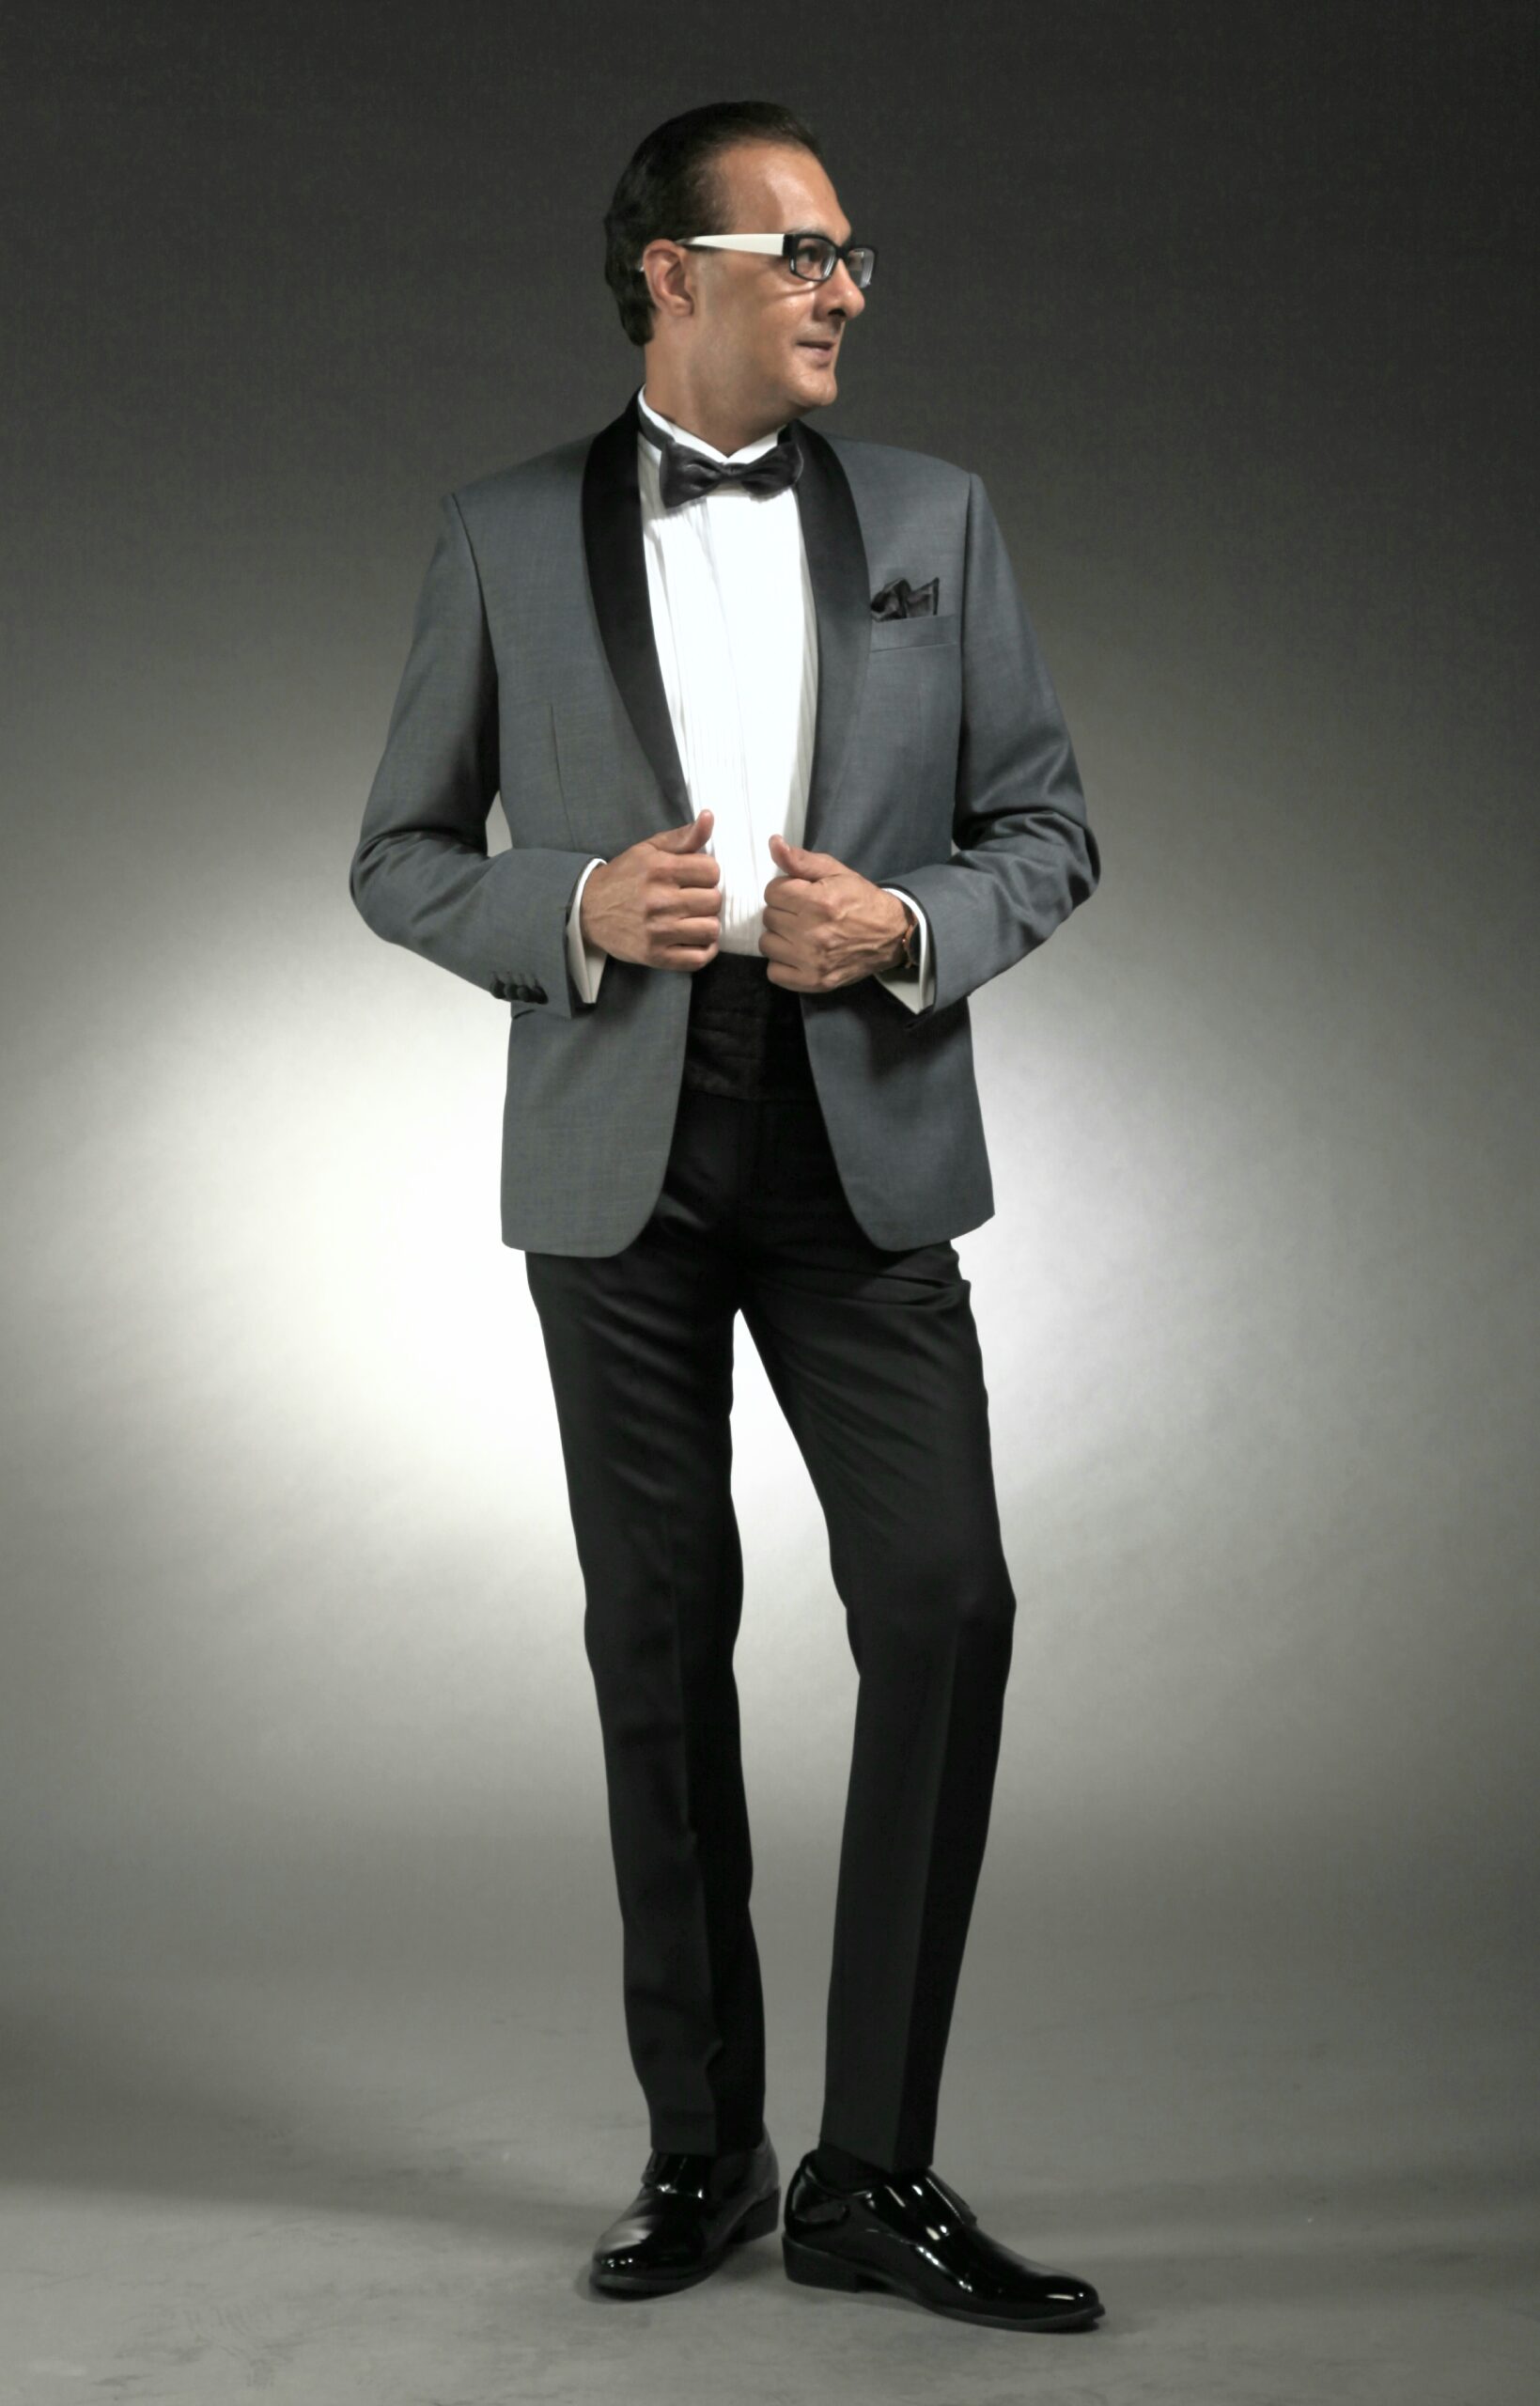 MST-5065-03-rent_rental_hire_tuxedo_suit_black_tie_suit_designer_suits_shop_tailor_tailors_singapore_wedding